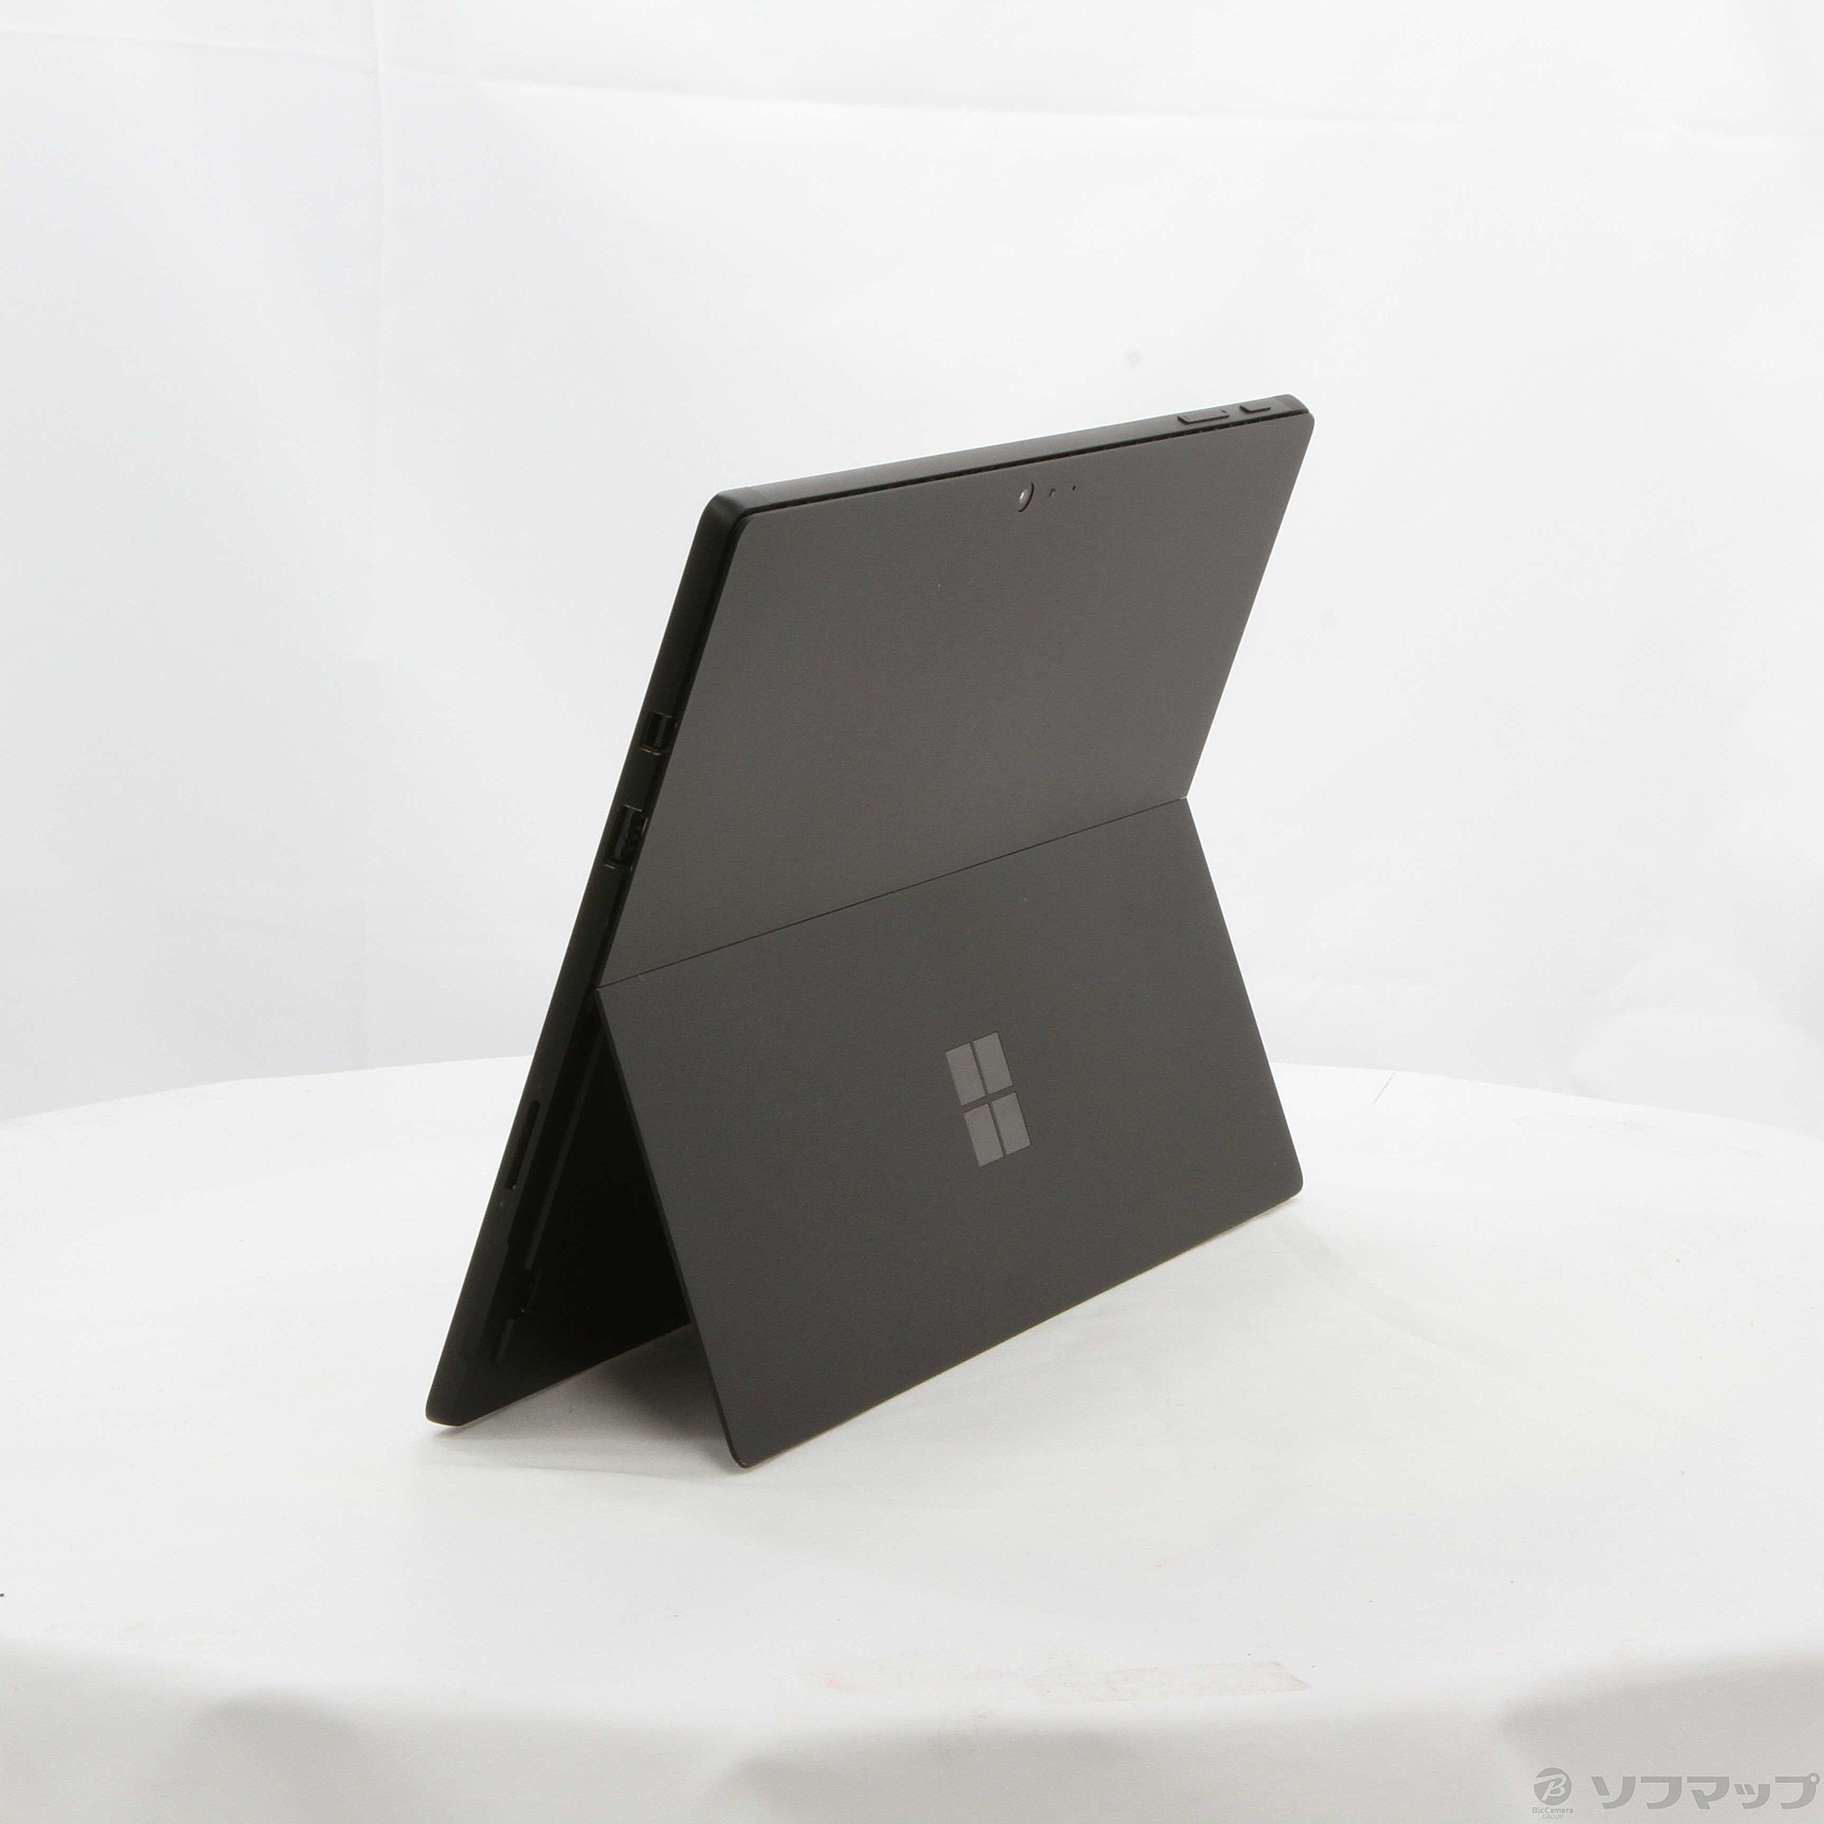 Surface Pro 6 KJU-00028 ブラック